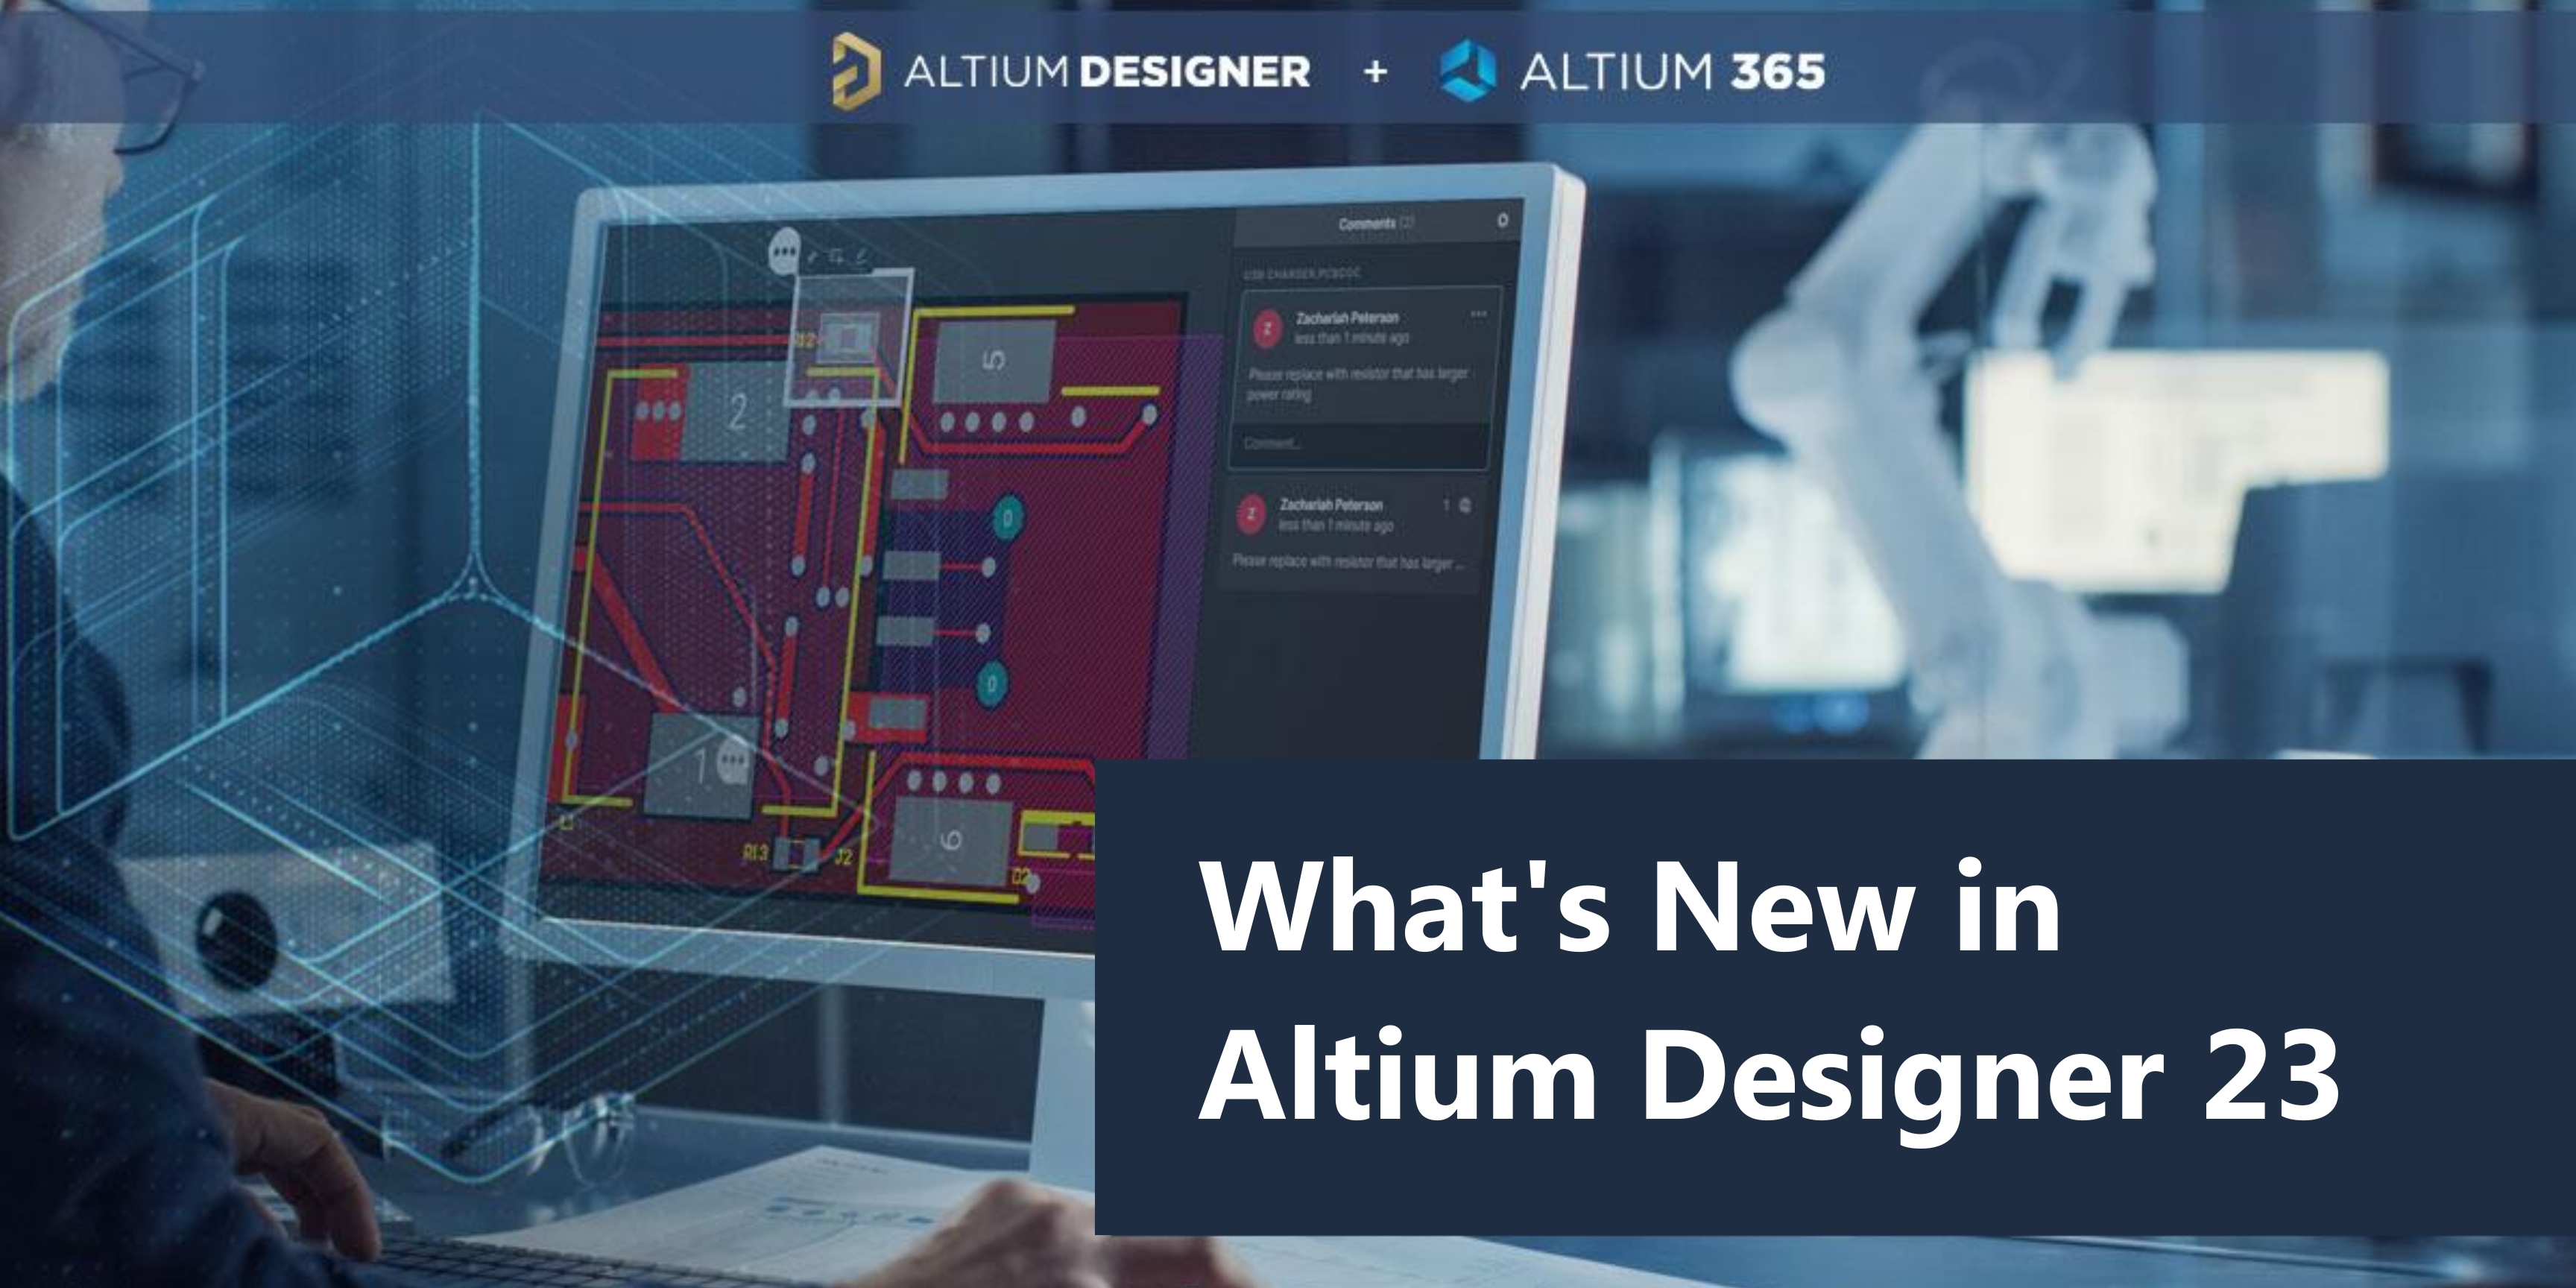 Altium Designer 23.9.2.47 download the new version for ios